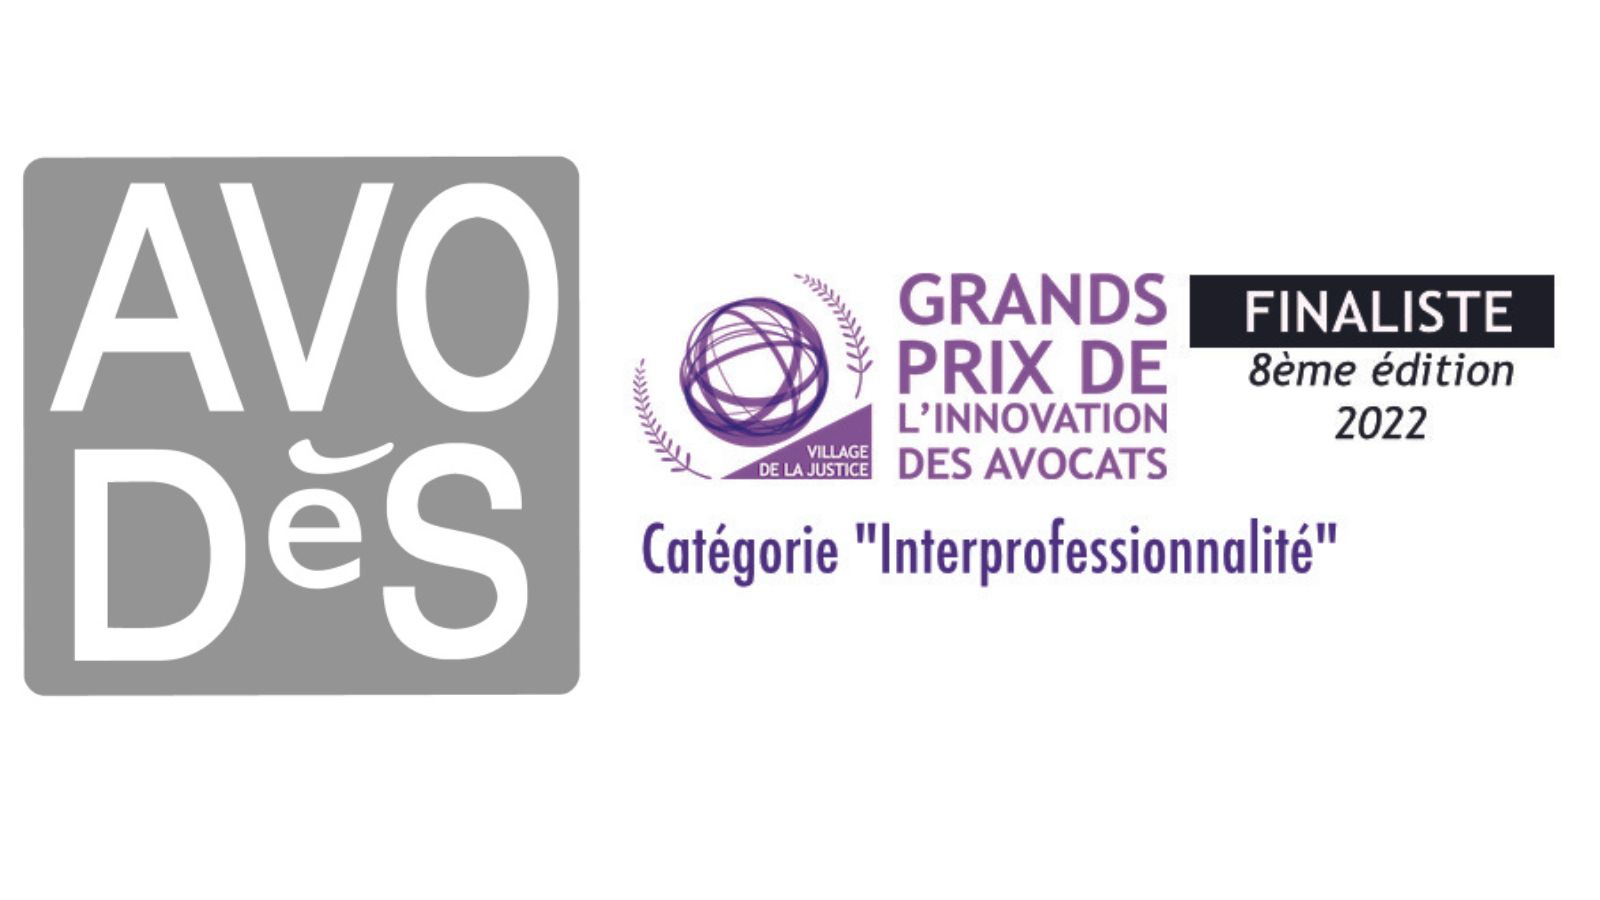 Avodès gagne le prix de l'innovation dans la catégorie interprofessionnalité !